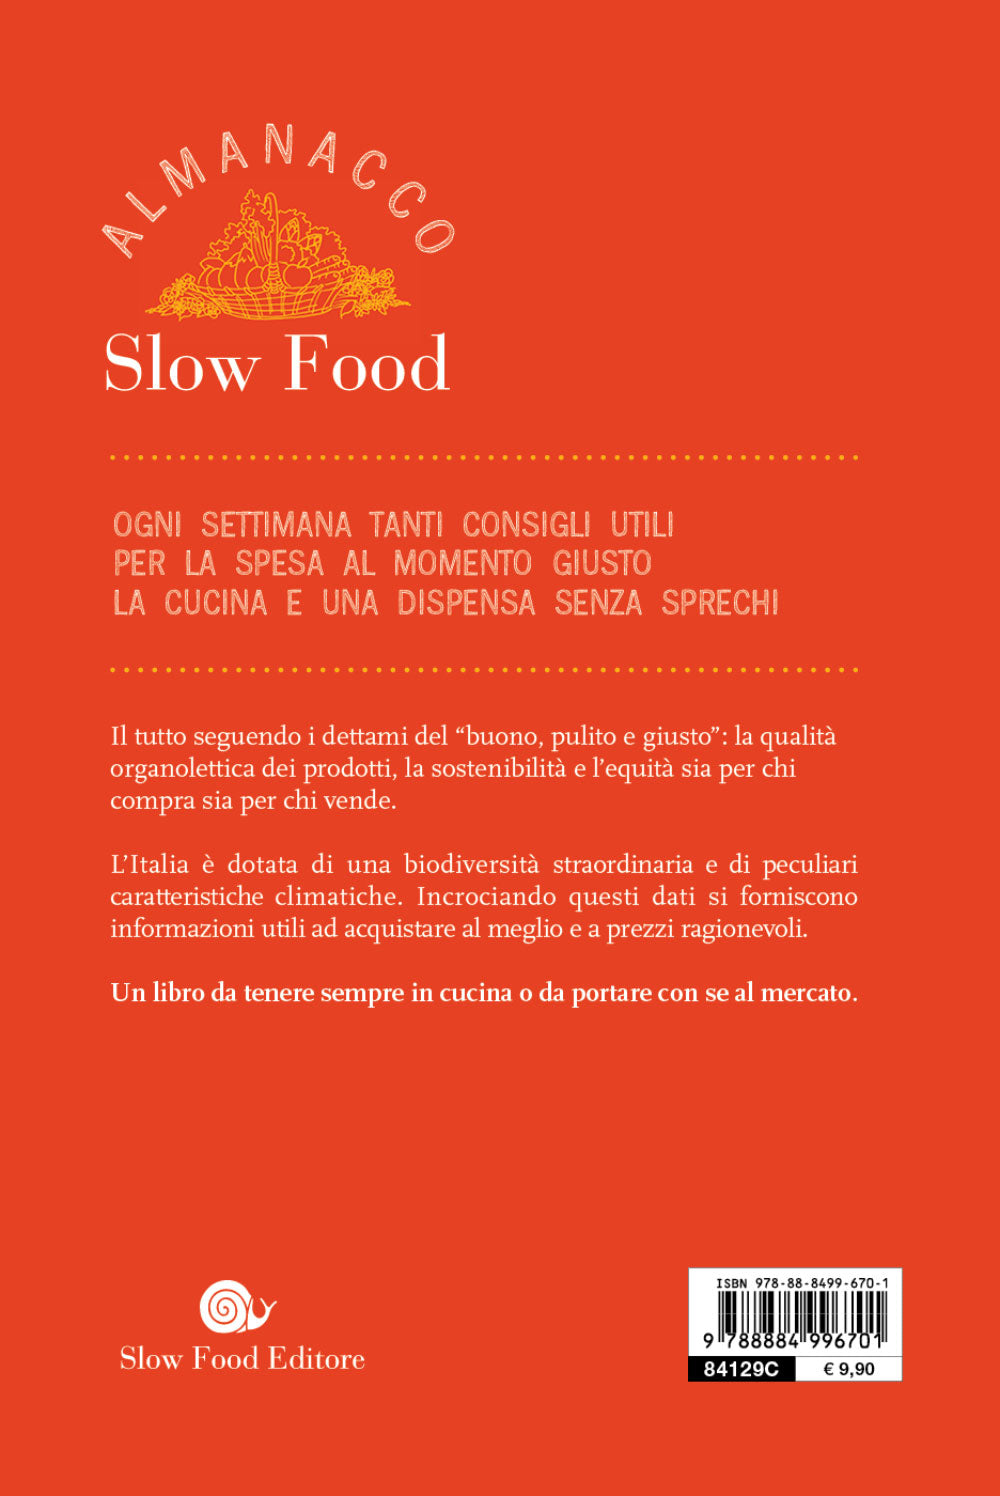 Almanacco Slow Food. Prodotti e ricette per un anno. Prodotti e ricette per un anno